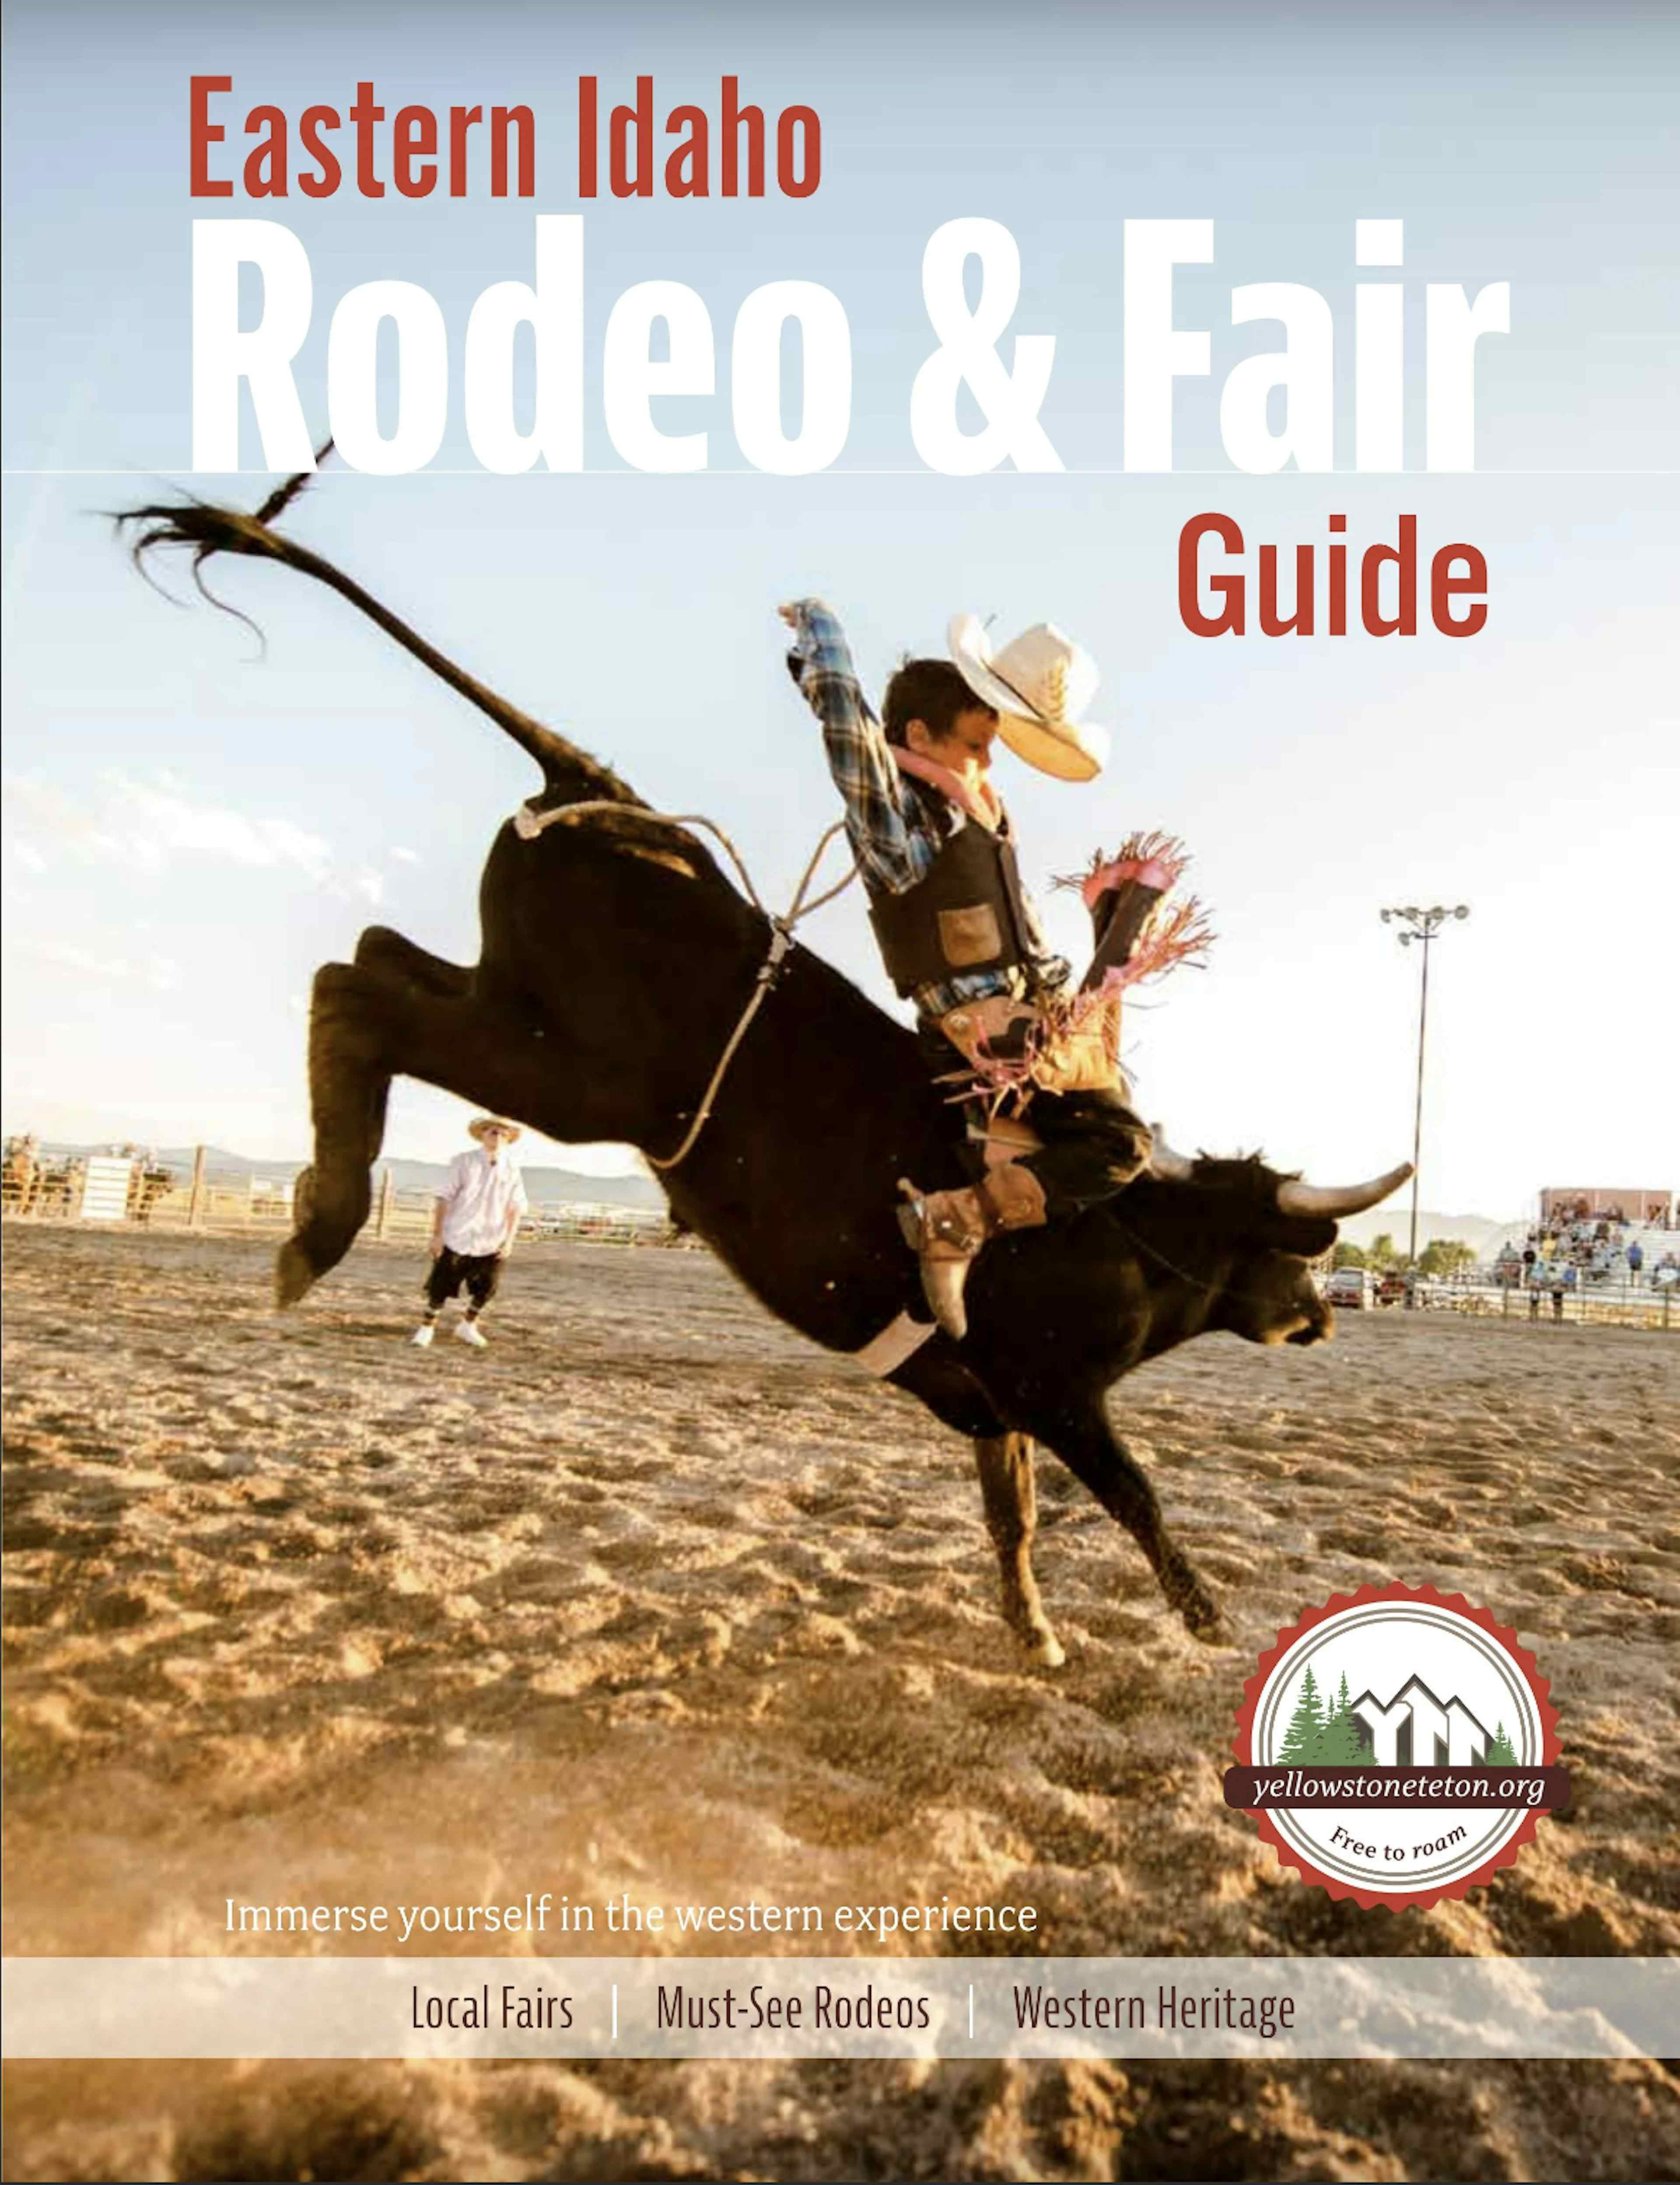 Eastern Idaho Rodeo & Fair Guide